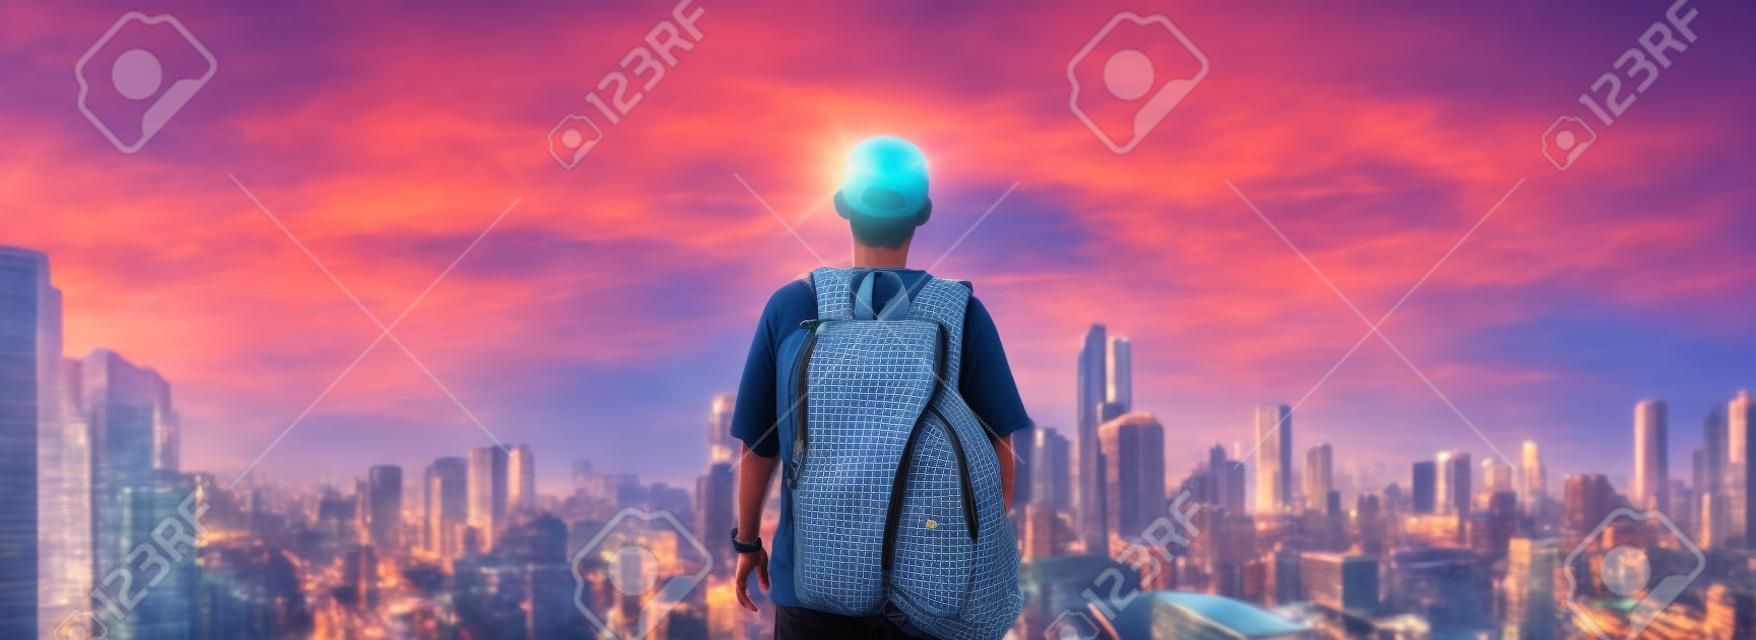 Panoramisch een man met rugzak staan op sightseeing uitzicht op de stad bij zonsopgang